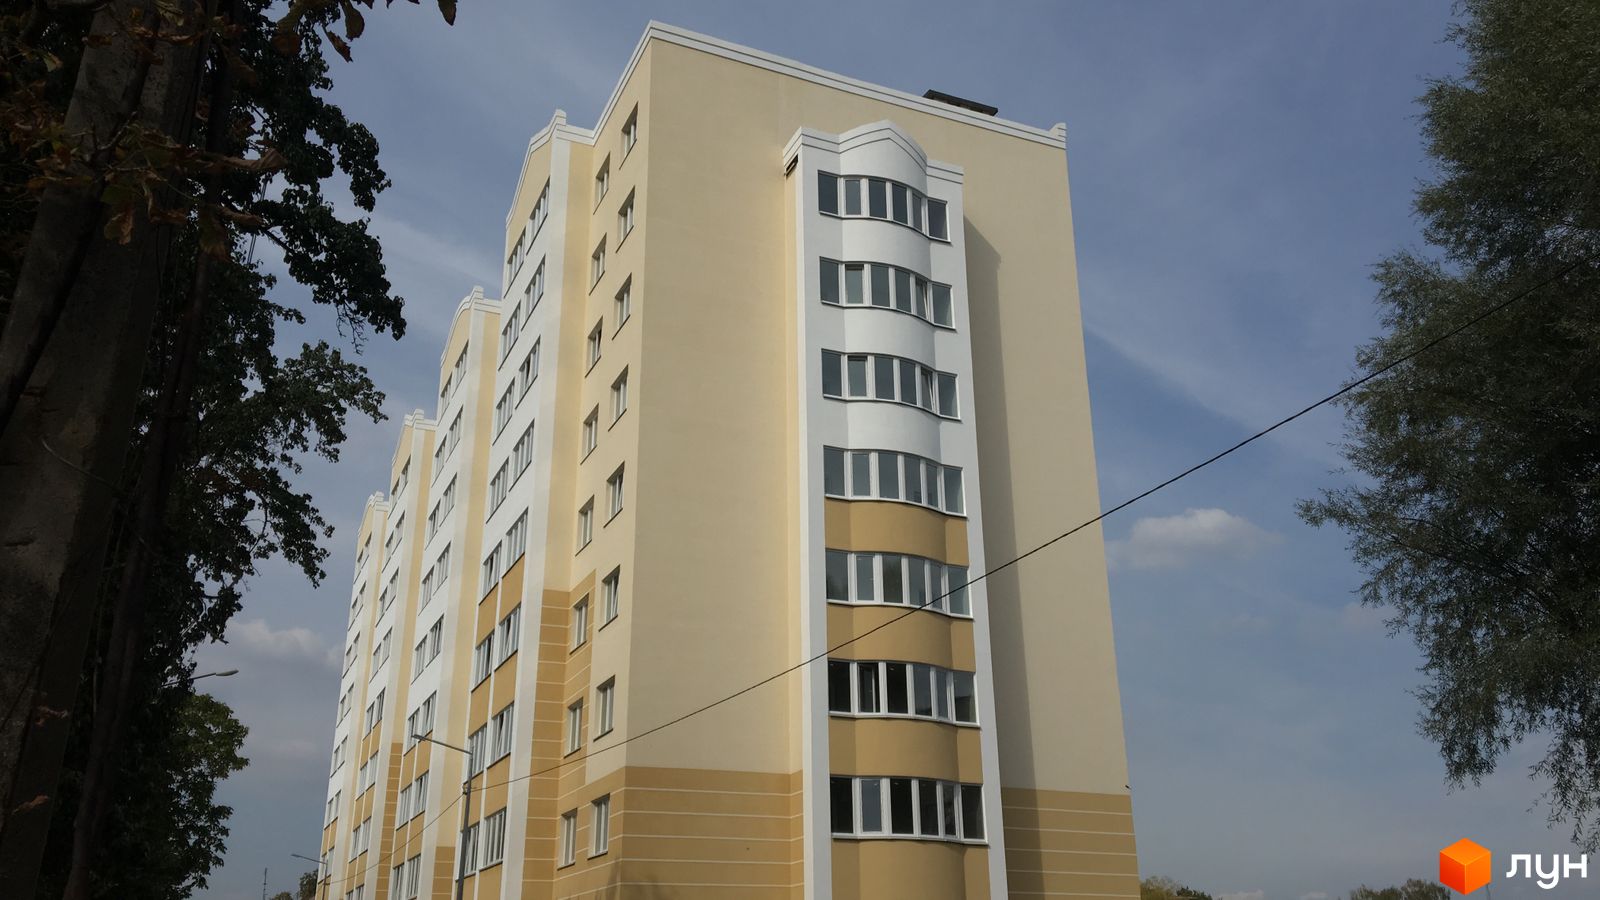 Моніторинг будівництва ЖК Новосілки - Ракурс 1, вересень 2018